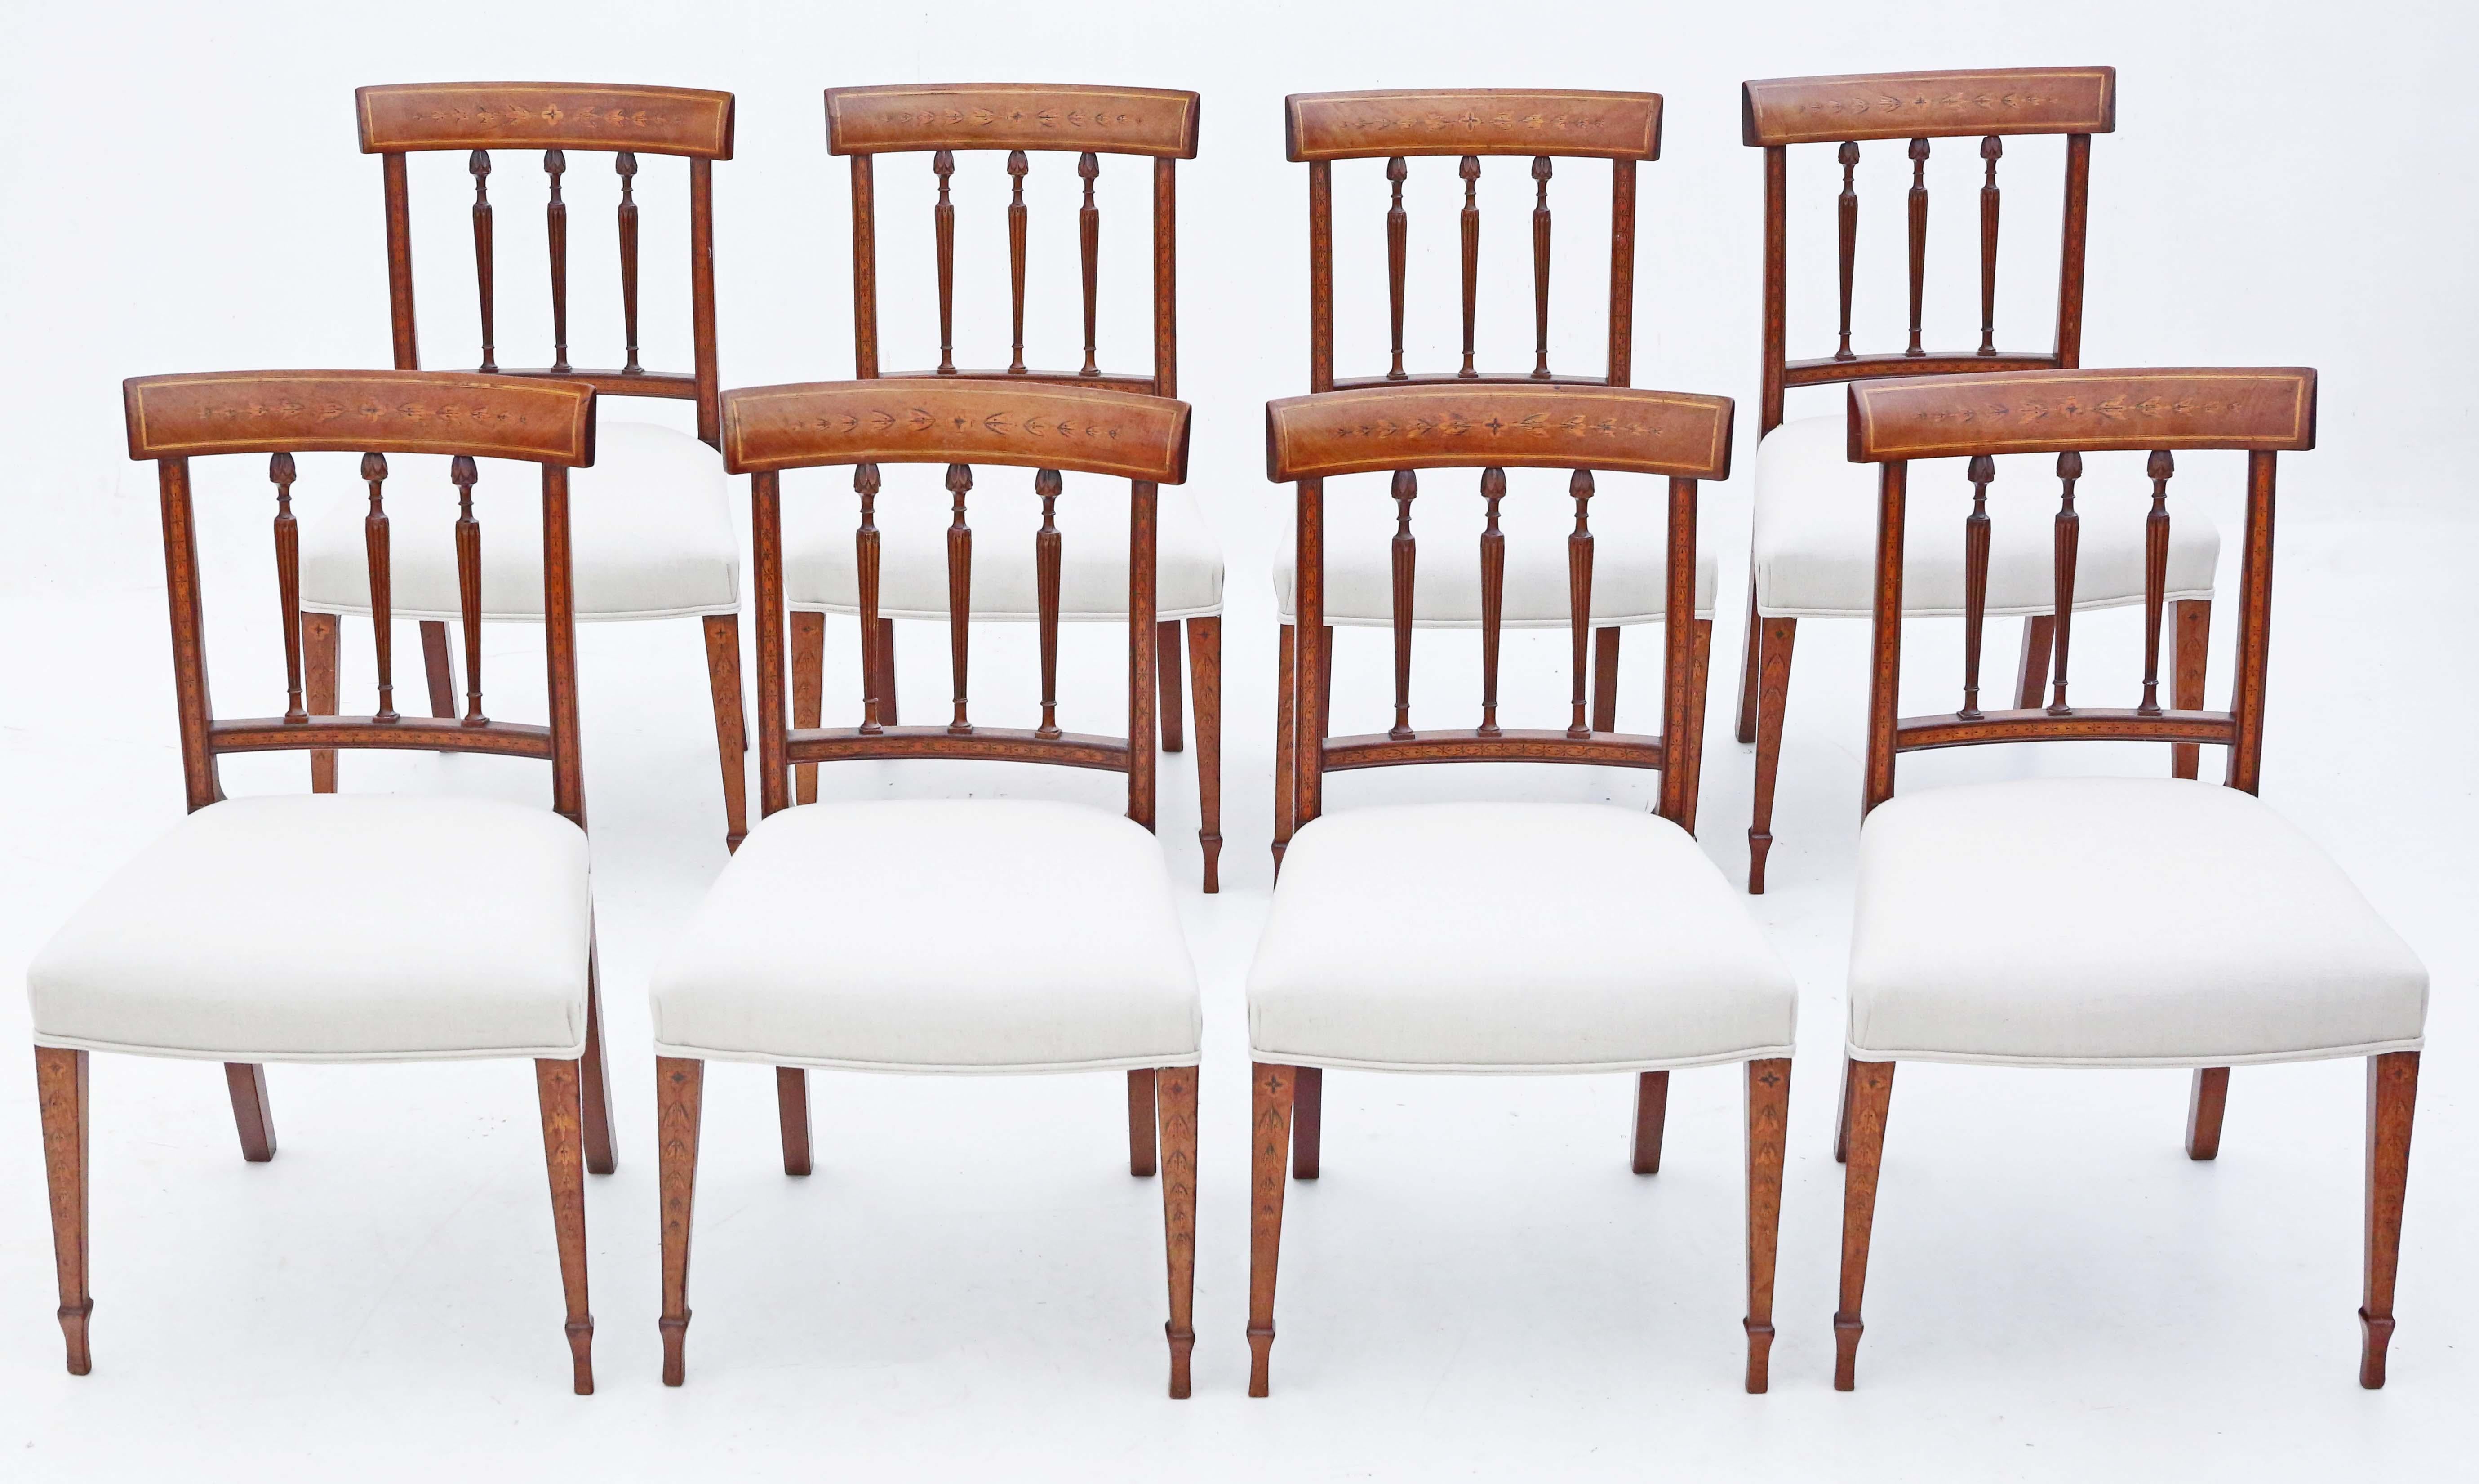 Entdecken Sie die exquisite Handwerkskunst dieses seltenen Satzes von 8 Mahagoni-Esszimmerstühlen mit Intarsien aus dem frühen 19. Jahrhundert. Diese Stühle zeichnen sich durch ein schlichtes, aber elegantes Design aus, das Raffinesse und zeitlosen